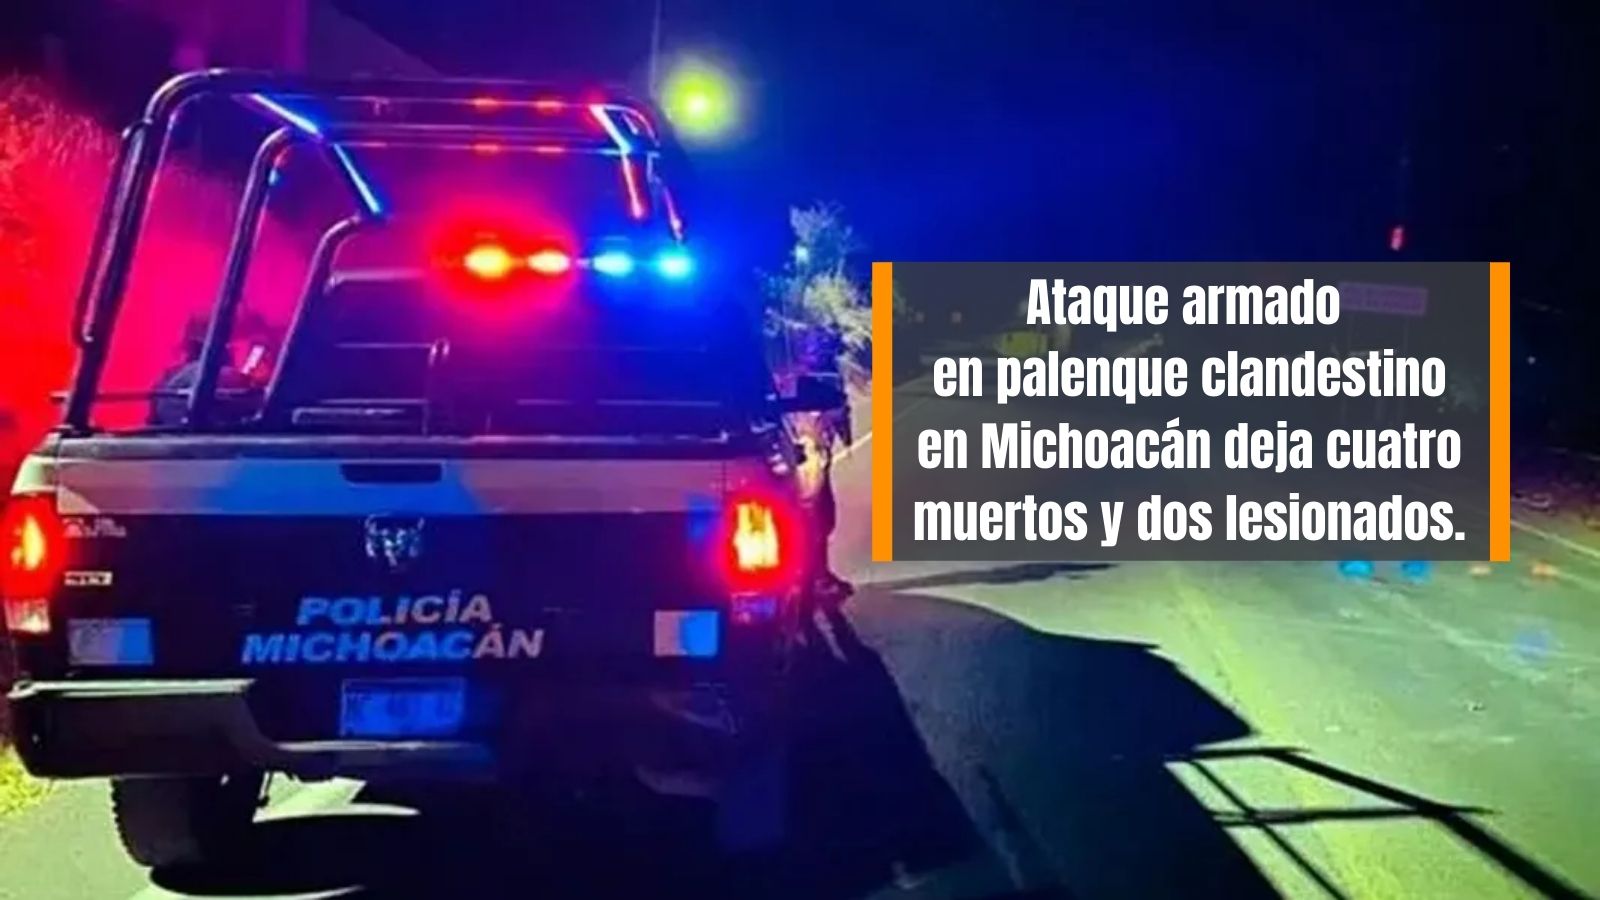 Comando armado asesina a cuatro en michoacán